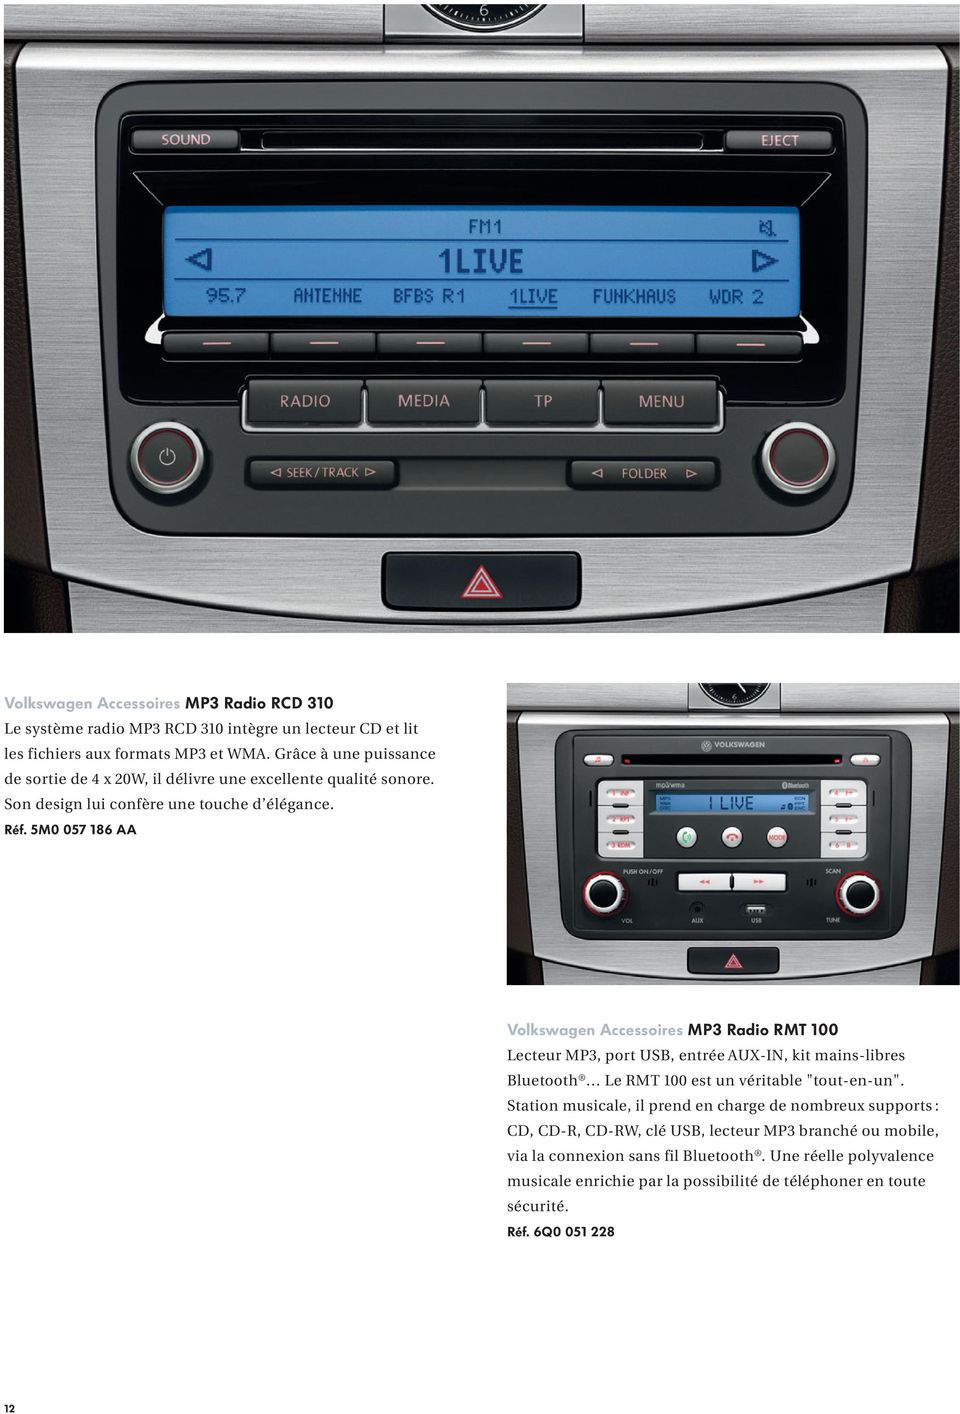 5M0 057 186 AA Volkswagen Accessoires MP3 Radio RMT 100 Lecteur MP3, port USB, entrée AUX-IN, kit mains-libres Bluetooth Le RMT 100 est un véritable "tout-en-un".